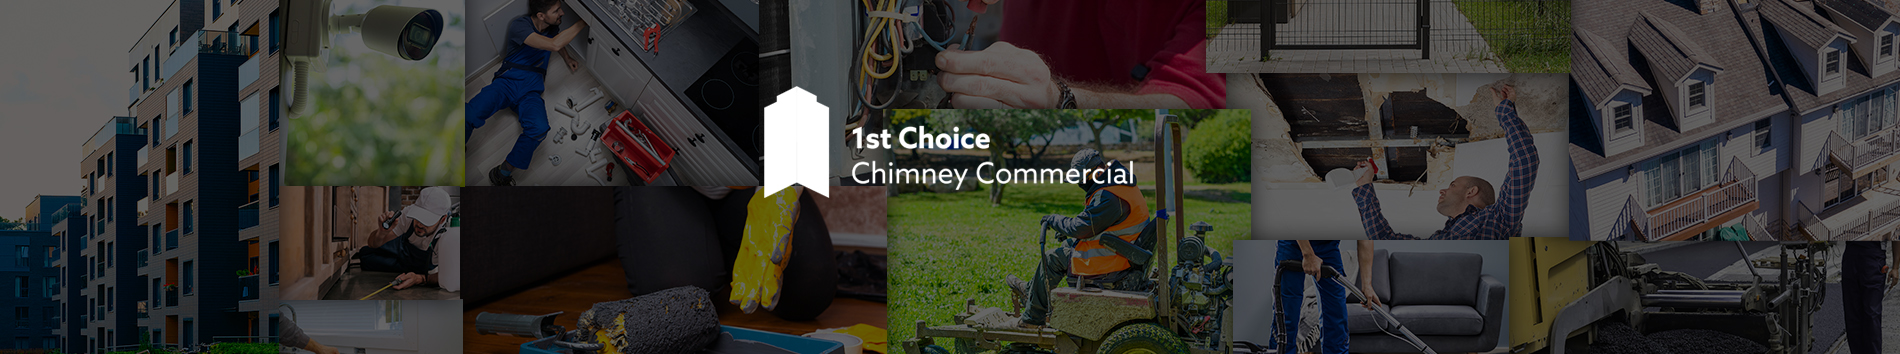 1st Choice Chimney